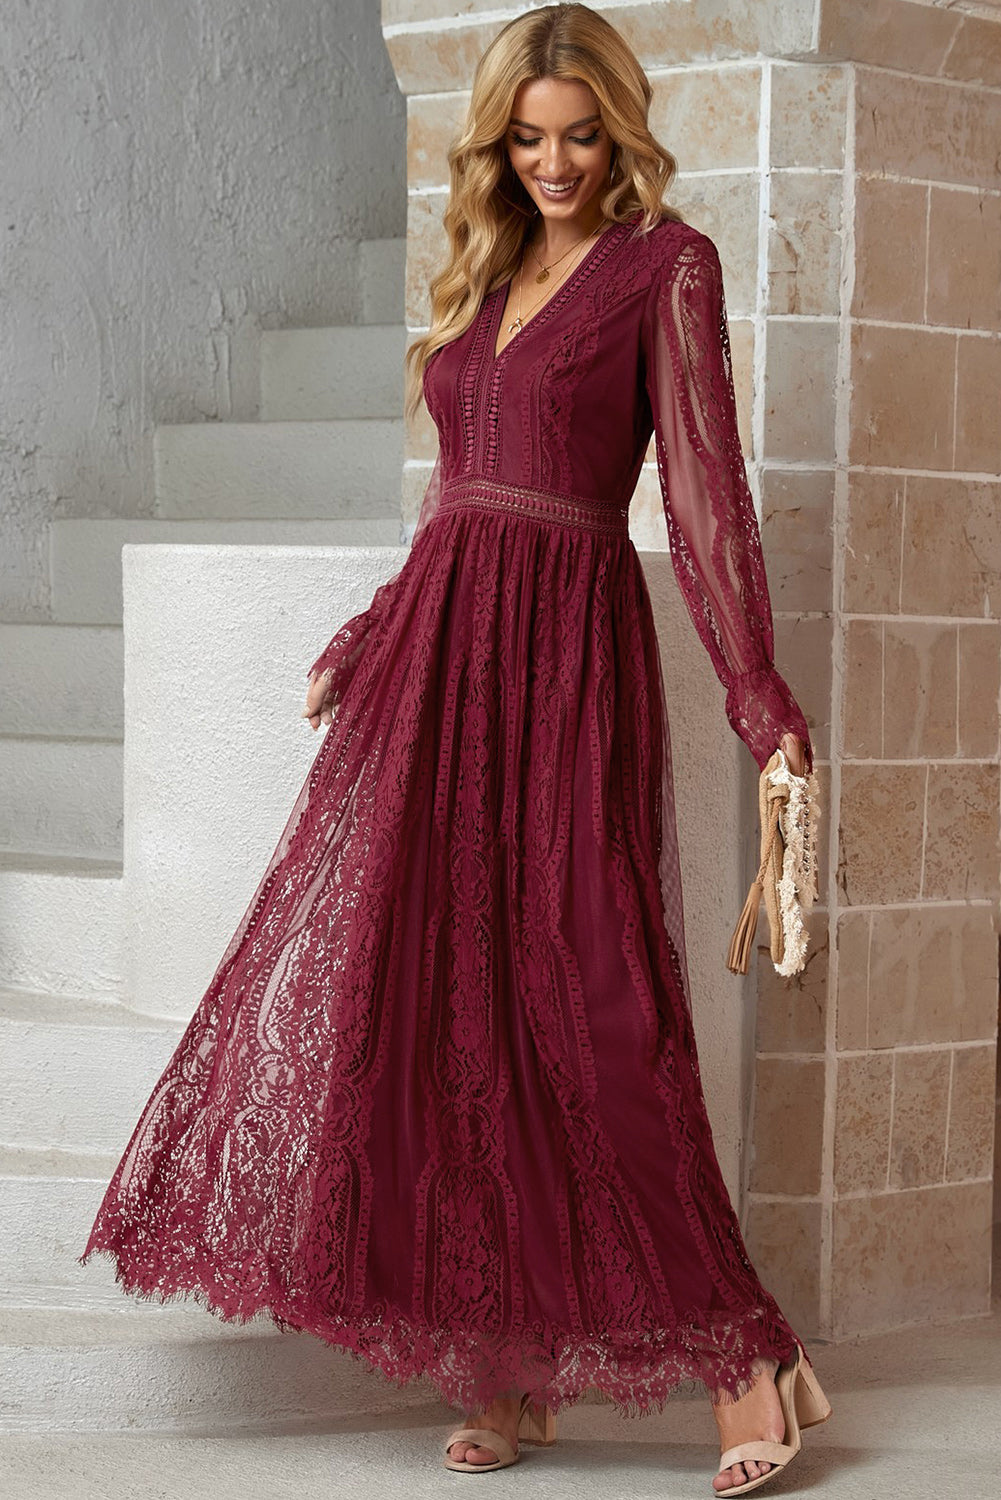 Mallory Scalloped Hem Flounce Sleeve Lace V-Neck Maxi Dress- 1 size XL/Wine left! FINAL SALE!